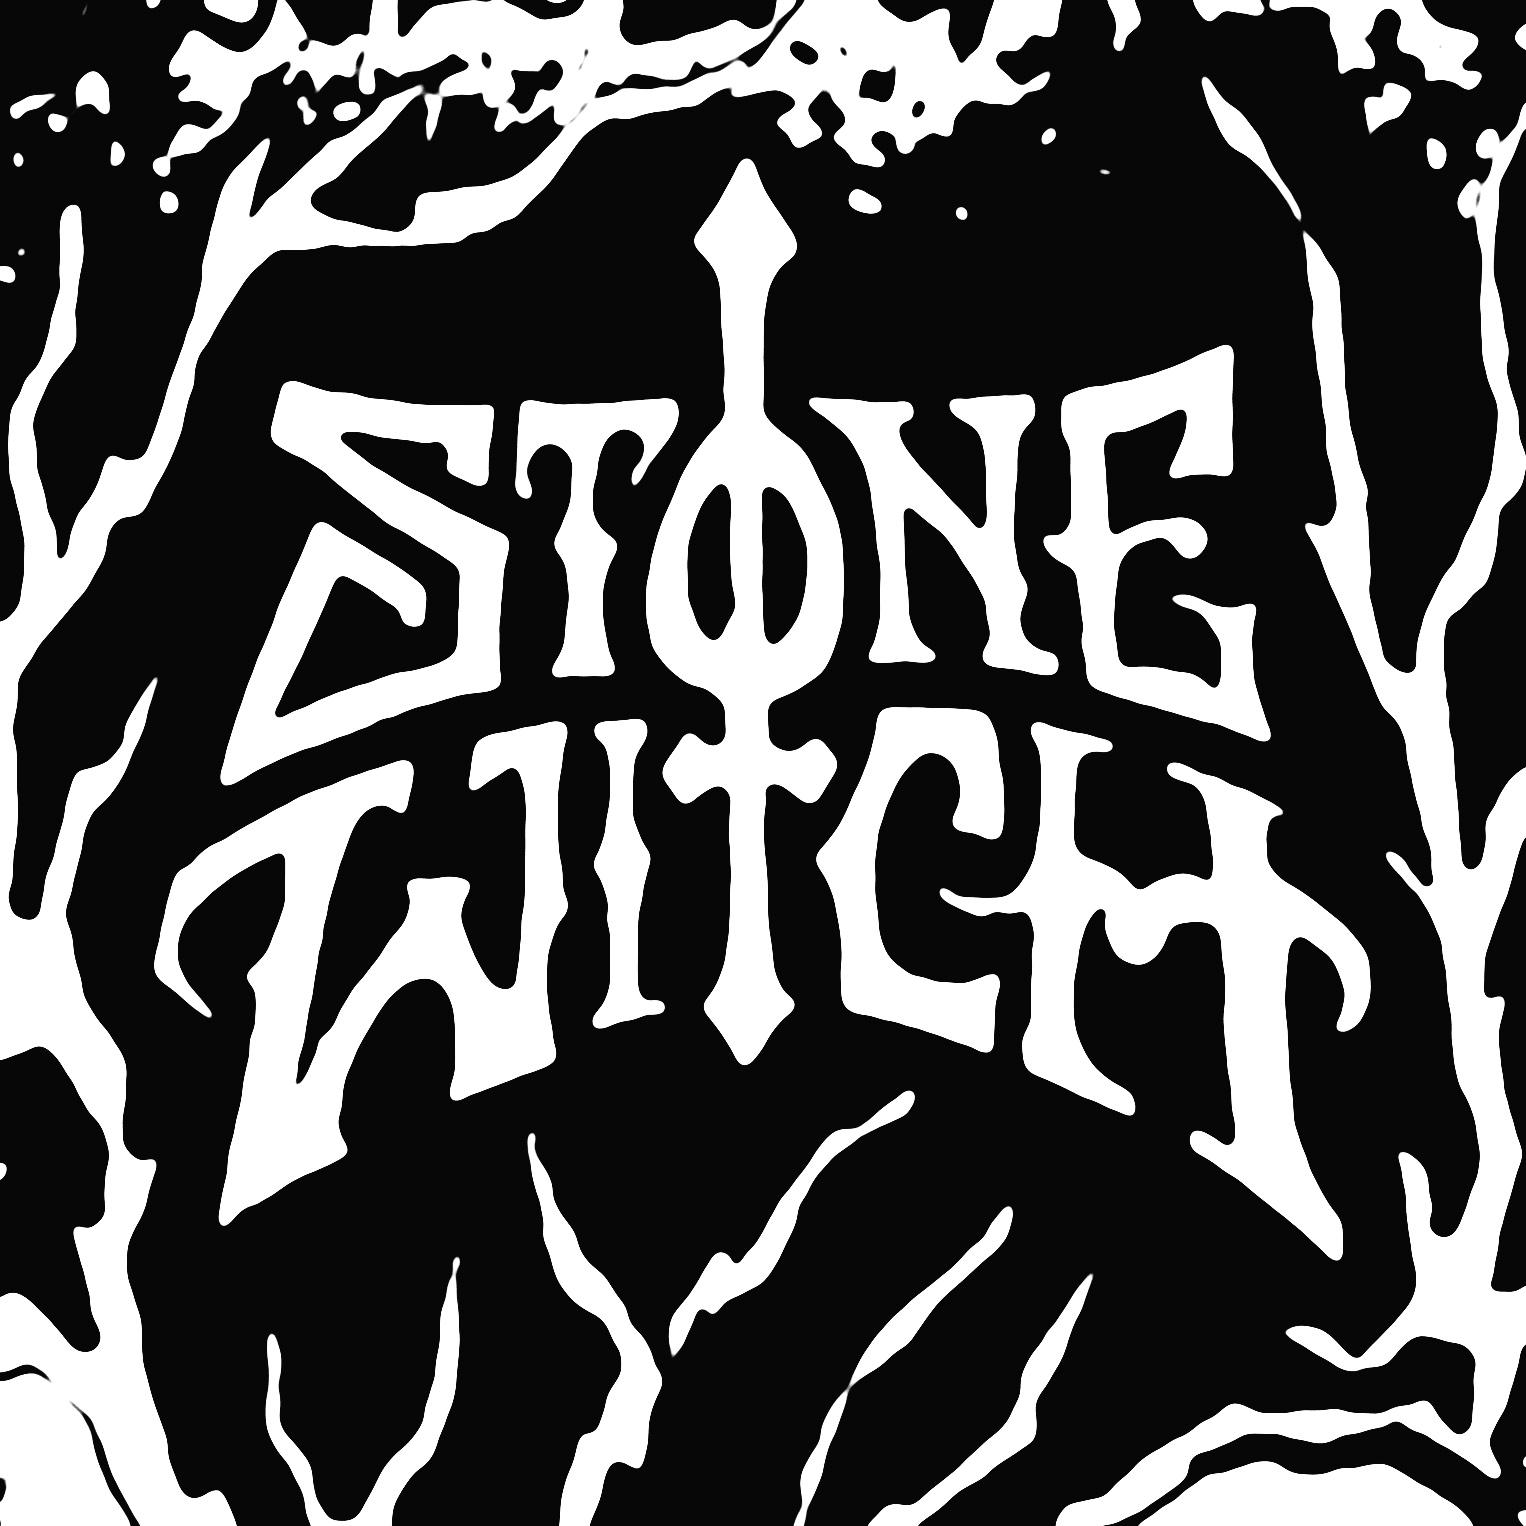 Witch stones